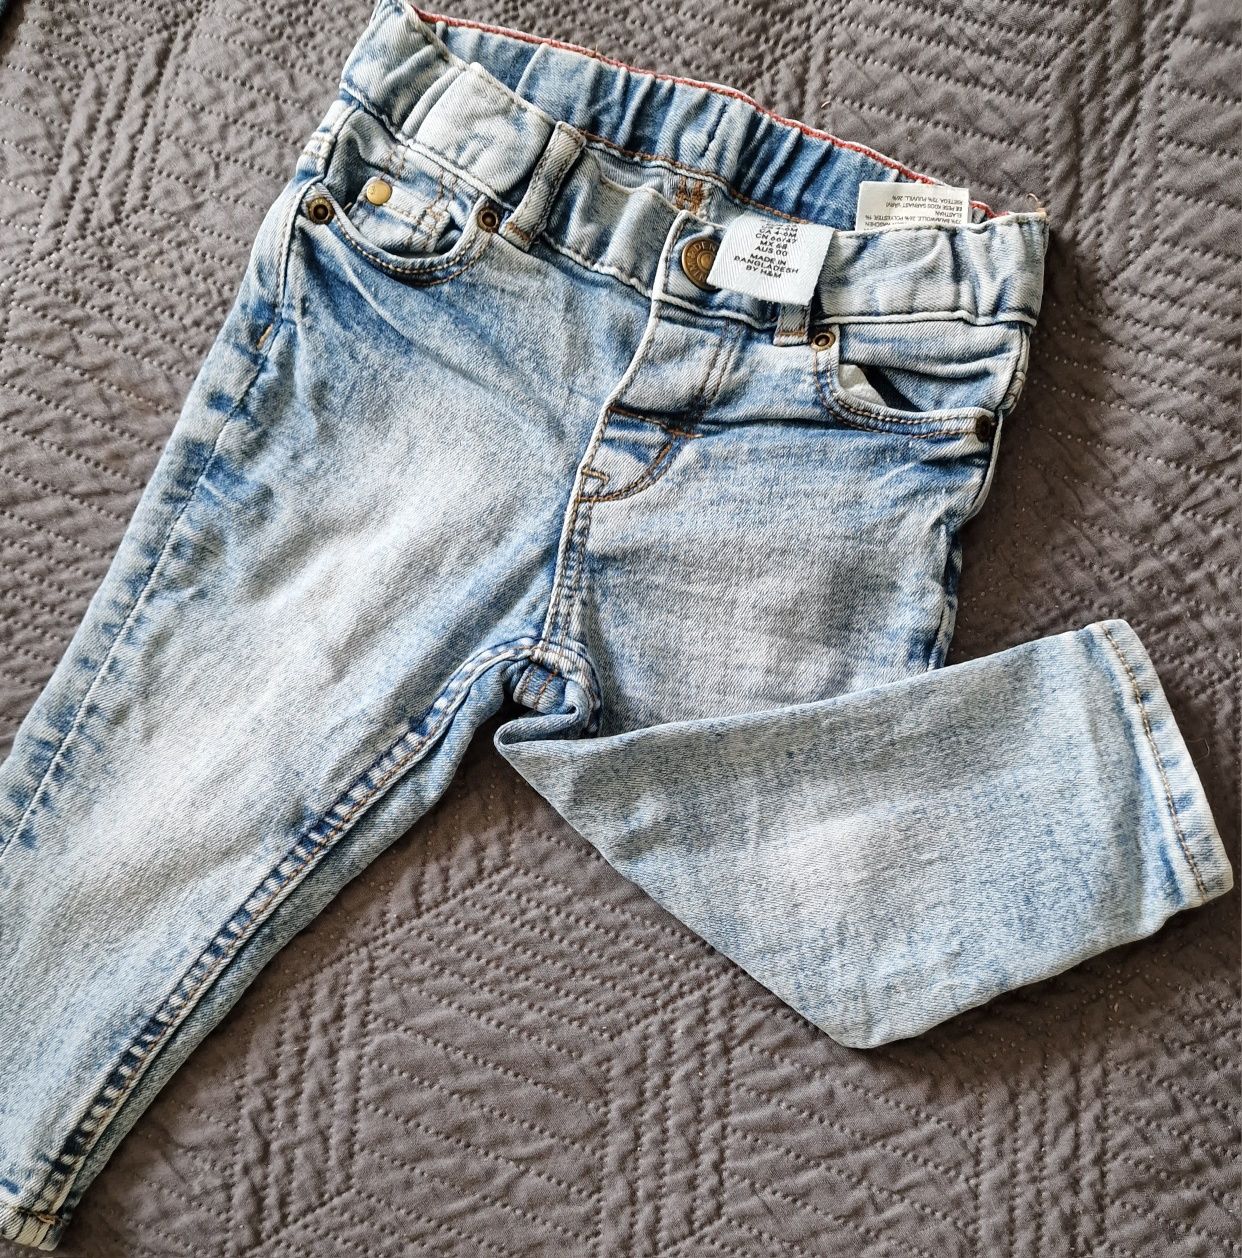 Spodnie dżinsowe dla chłopca zestaw 2+1 gratis 68